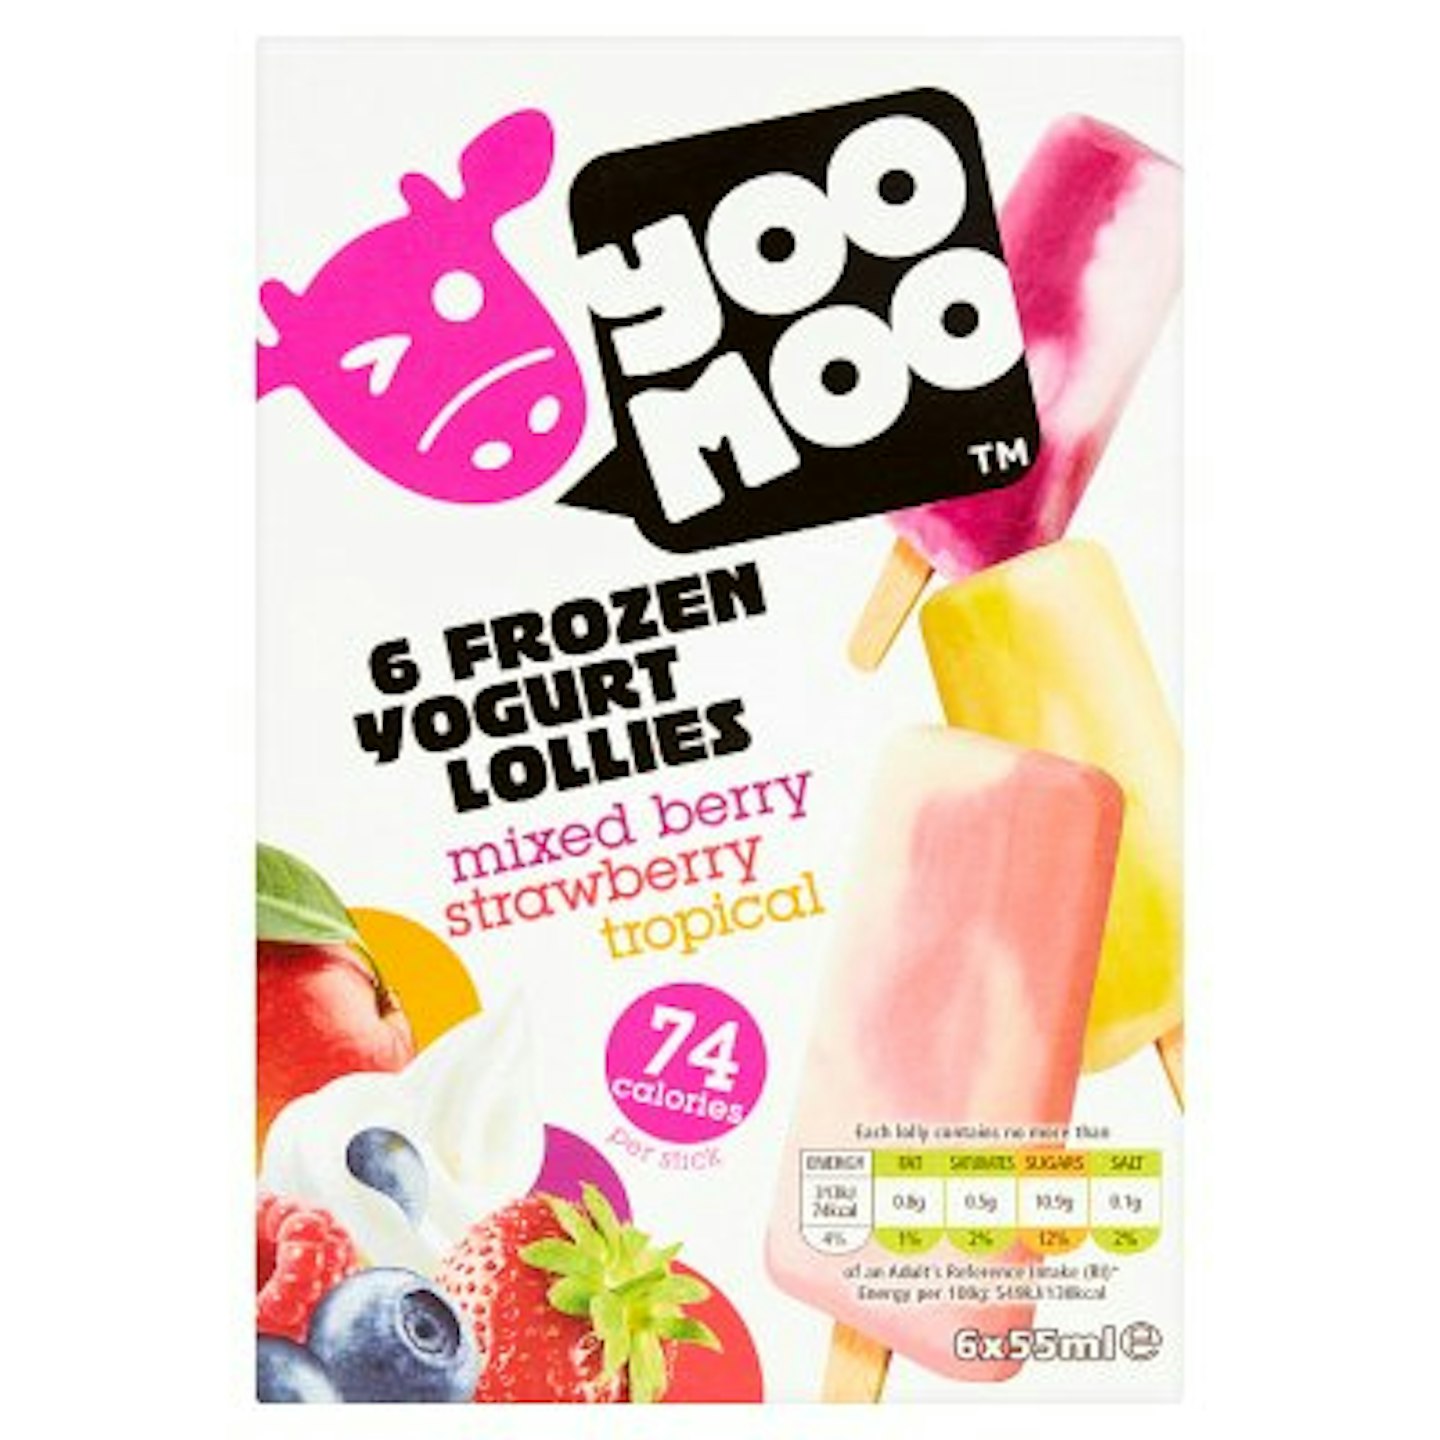 YooMoo Frozen Yogurt Lollies